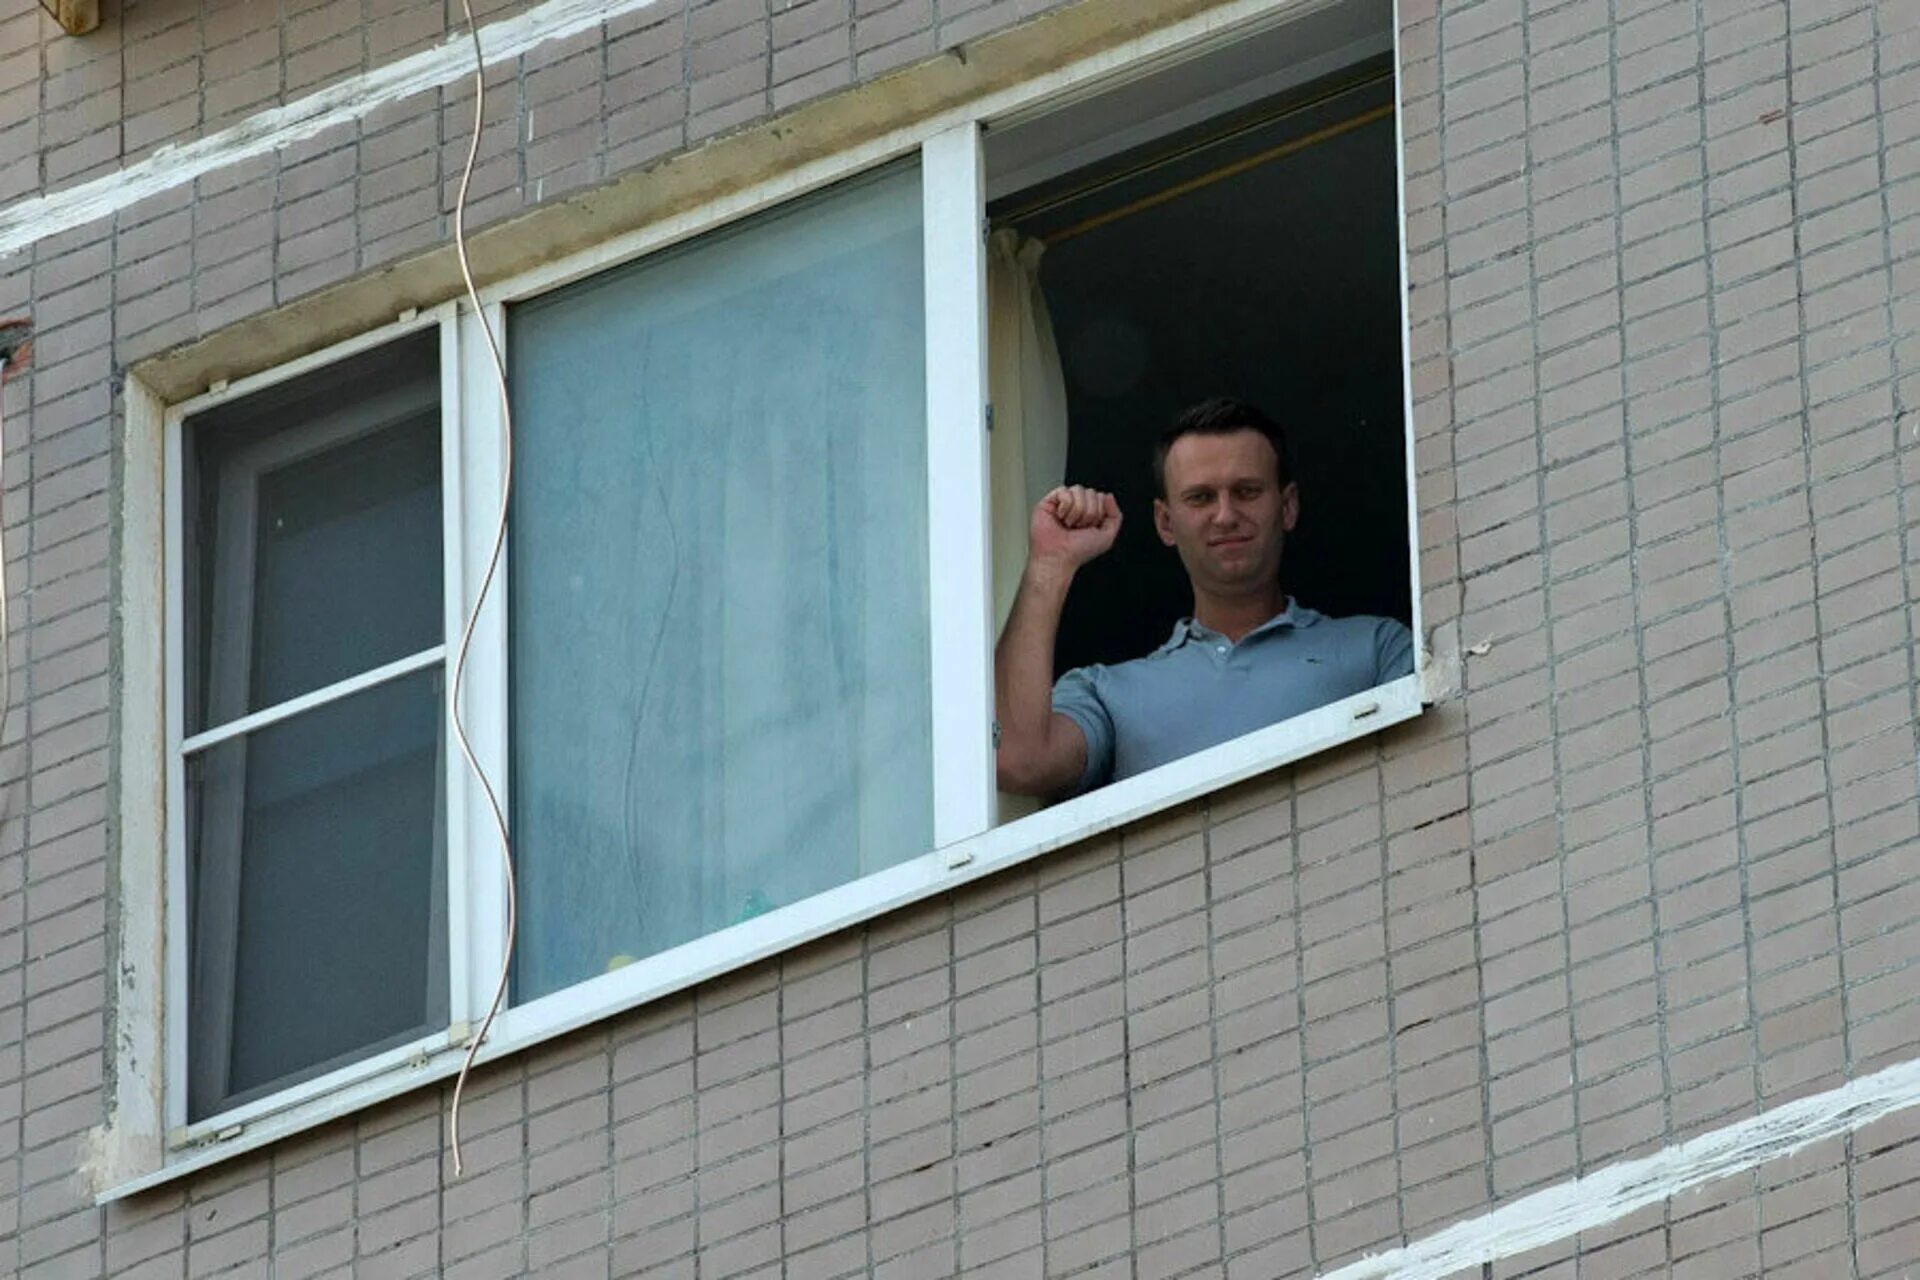 Дом Алексея Навального. Дом Навального в Марьино. Навальный в окне. Человек у окна. Где дом навального